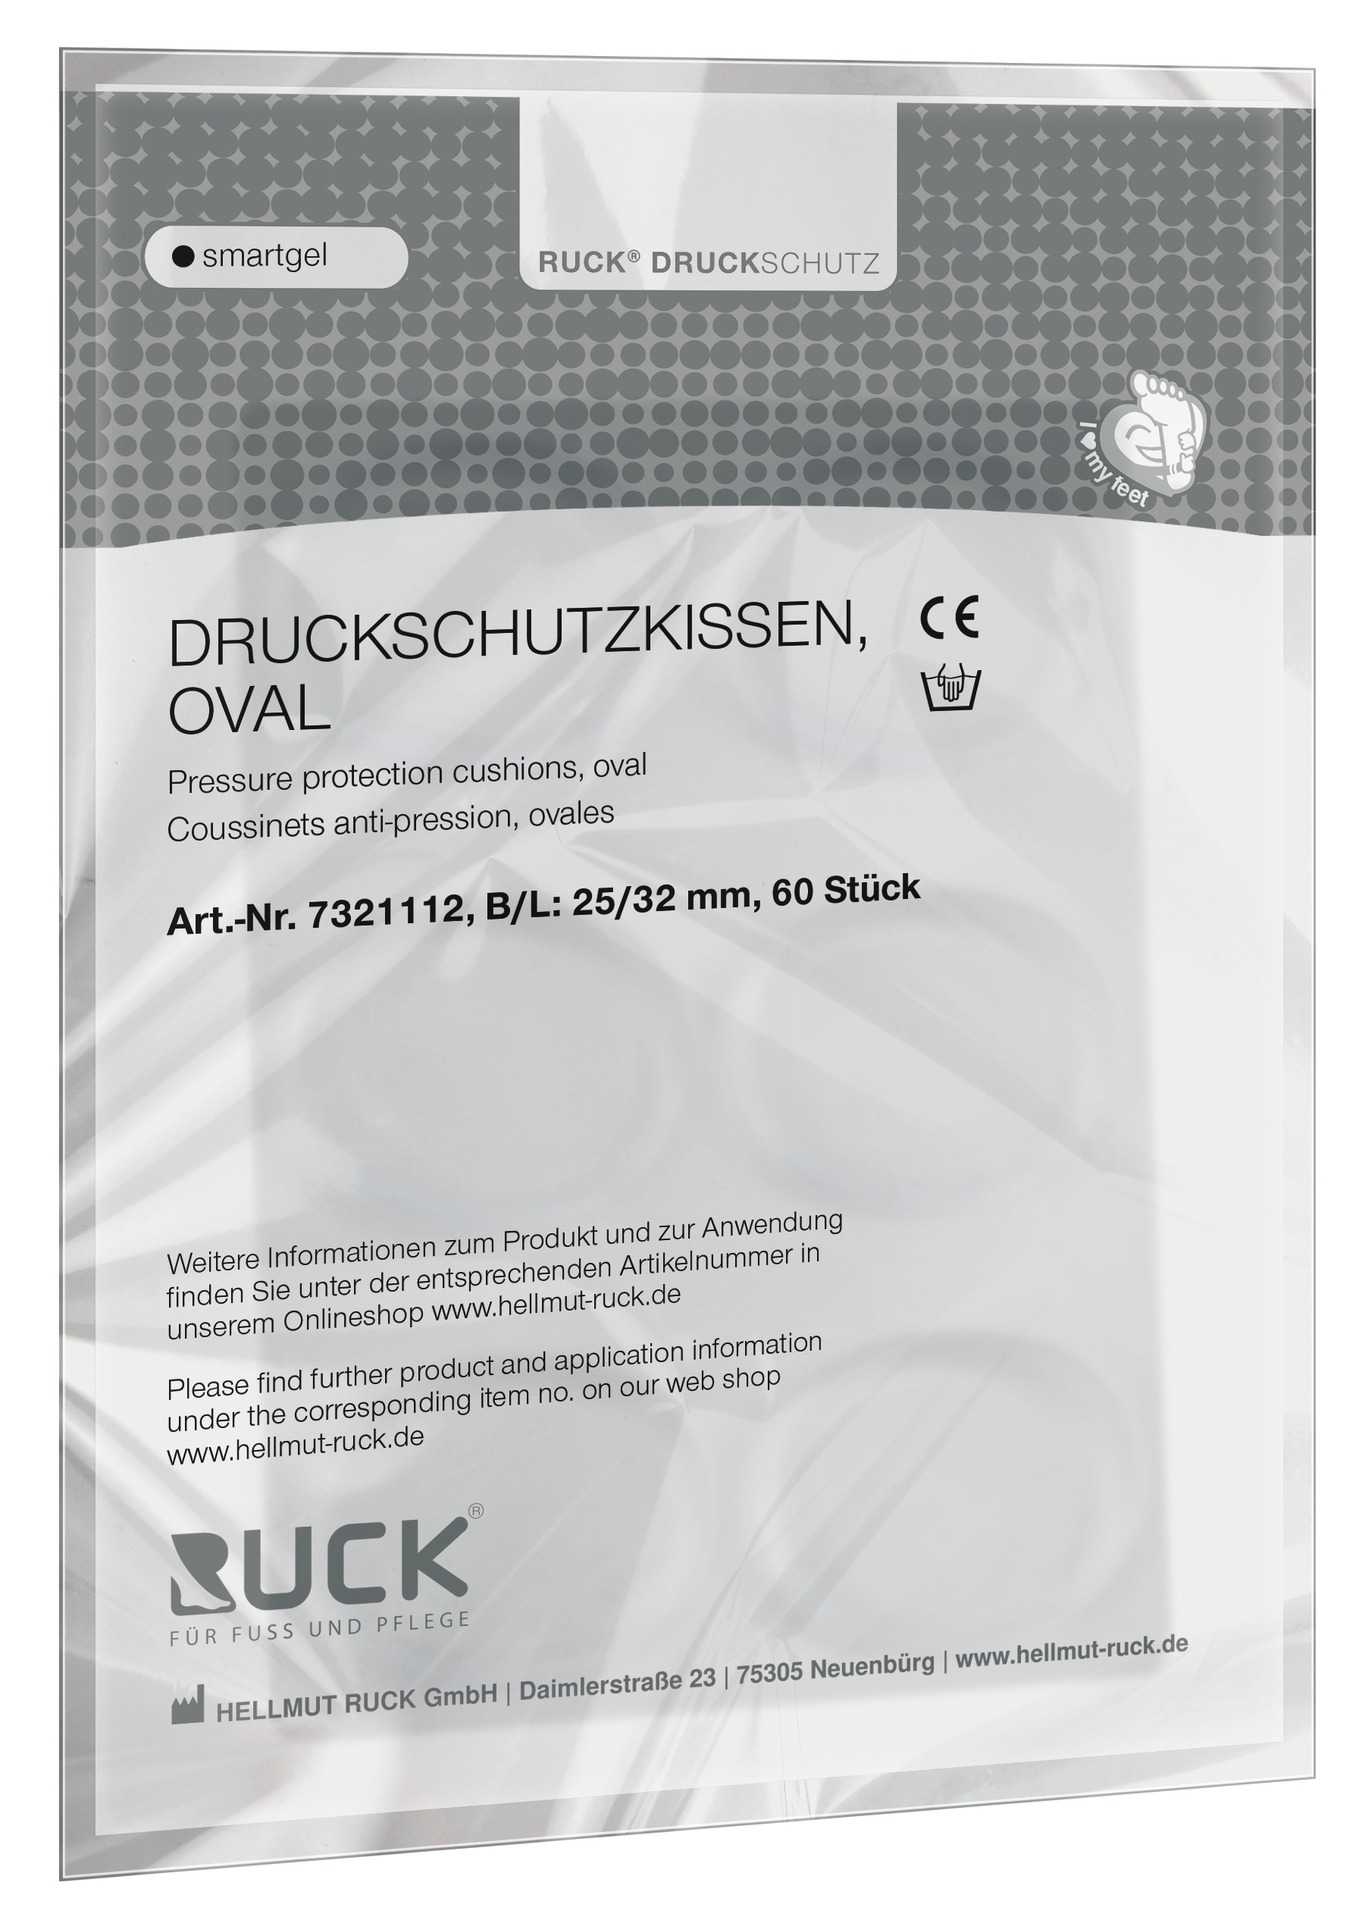 RUCK DRUCKSCHUTZ smartgel Druckschutzkissen oval | 60 Stück (Staffelpreis)